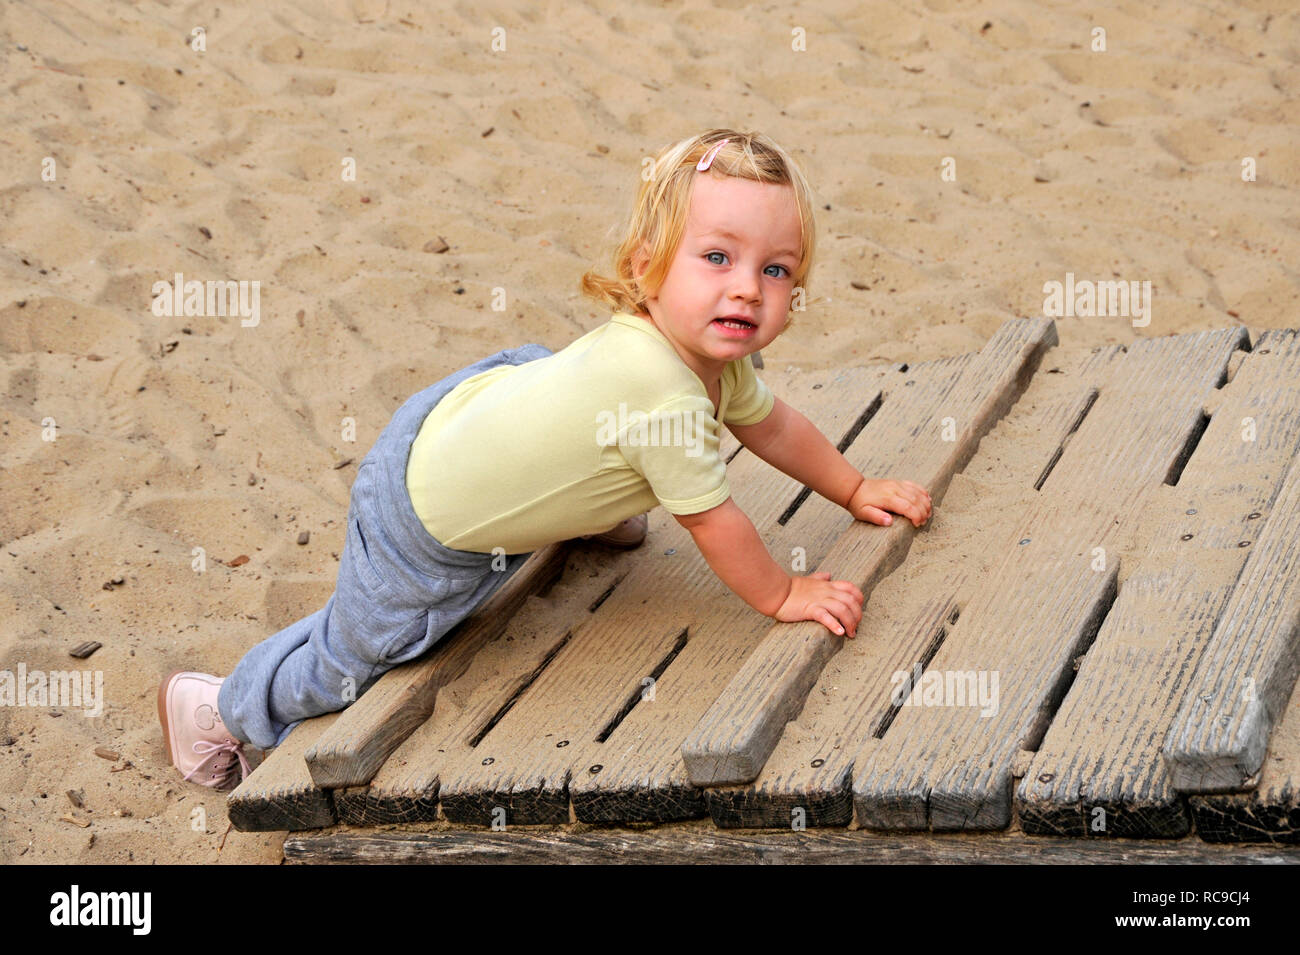 kleines Kind, Mädchen, 2 Jahre alt, auf dem Spielplatz | little child, 2 years old, on a playground Stock Photo